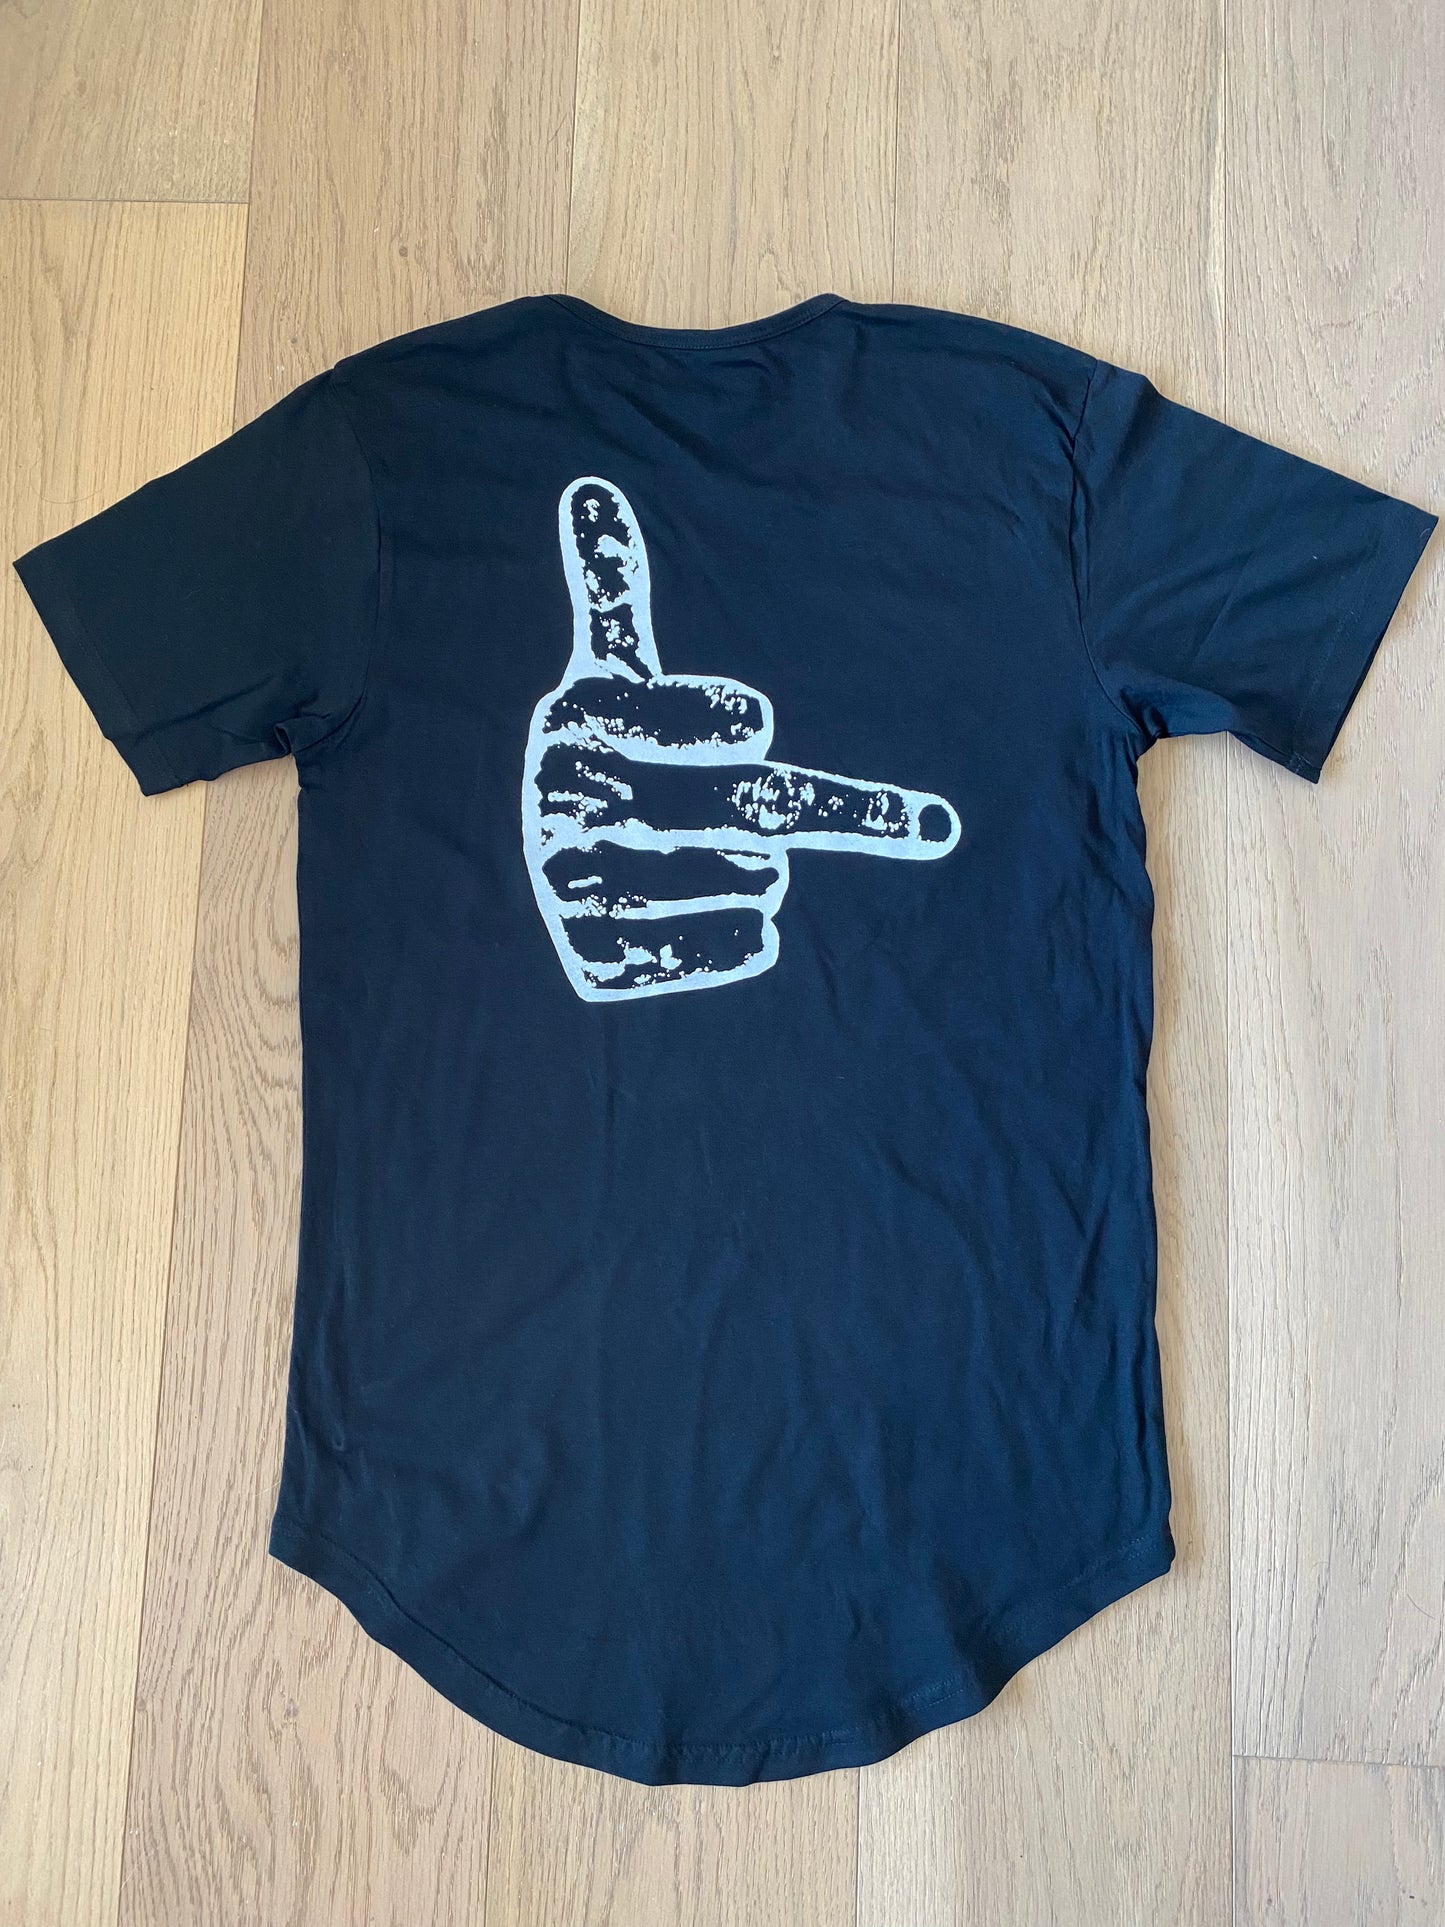 FxckYeah T-Shirt